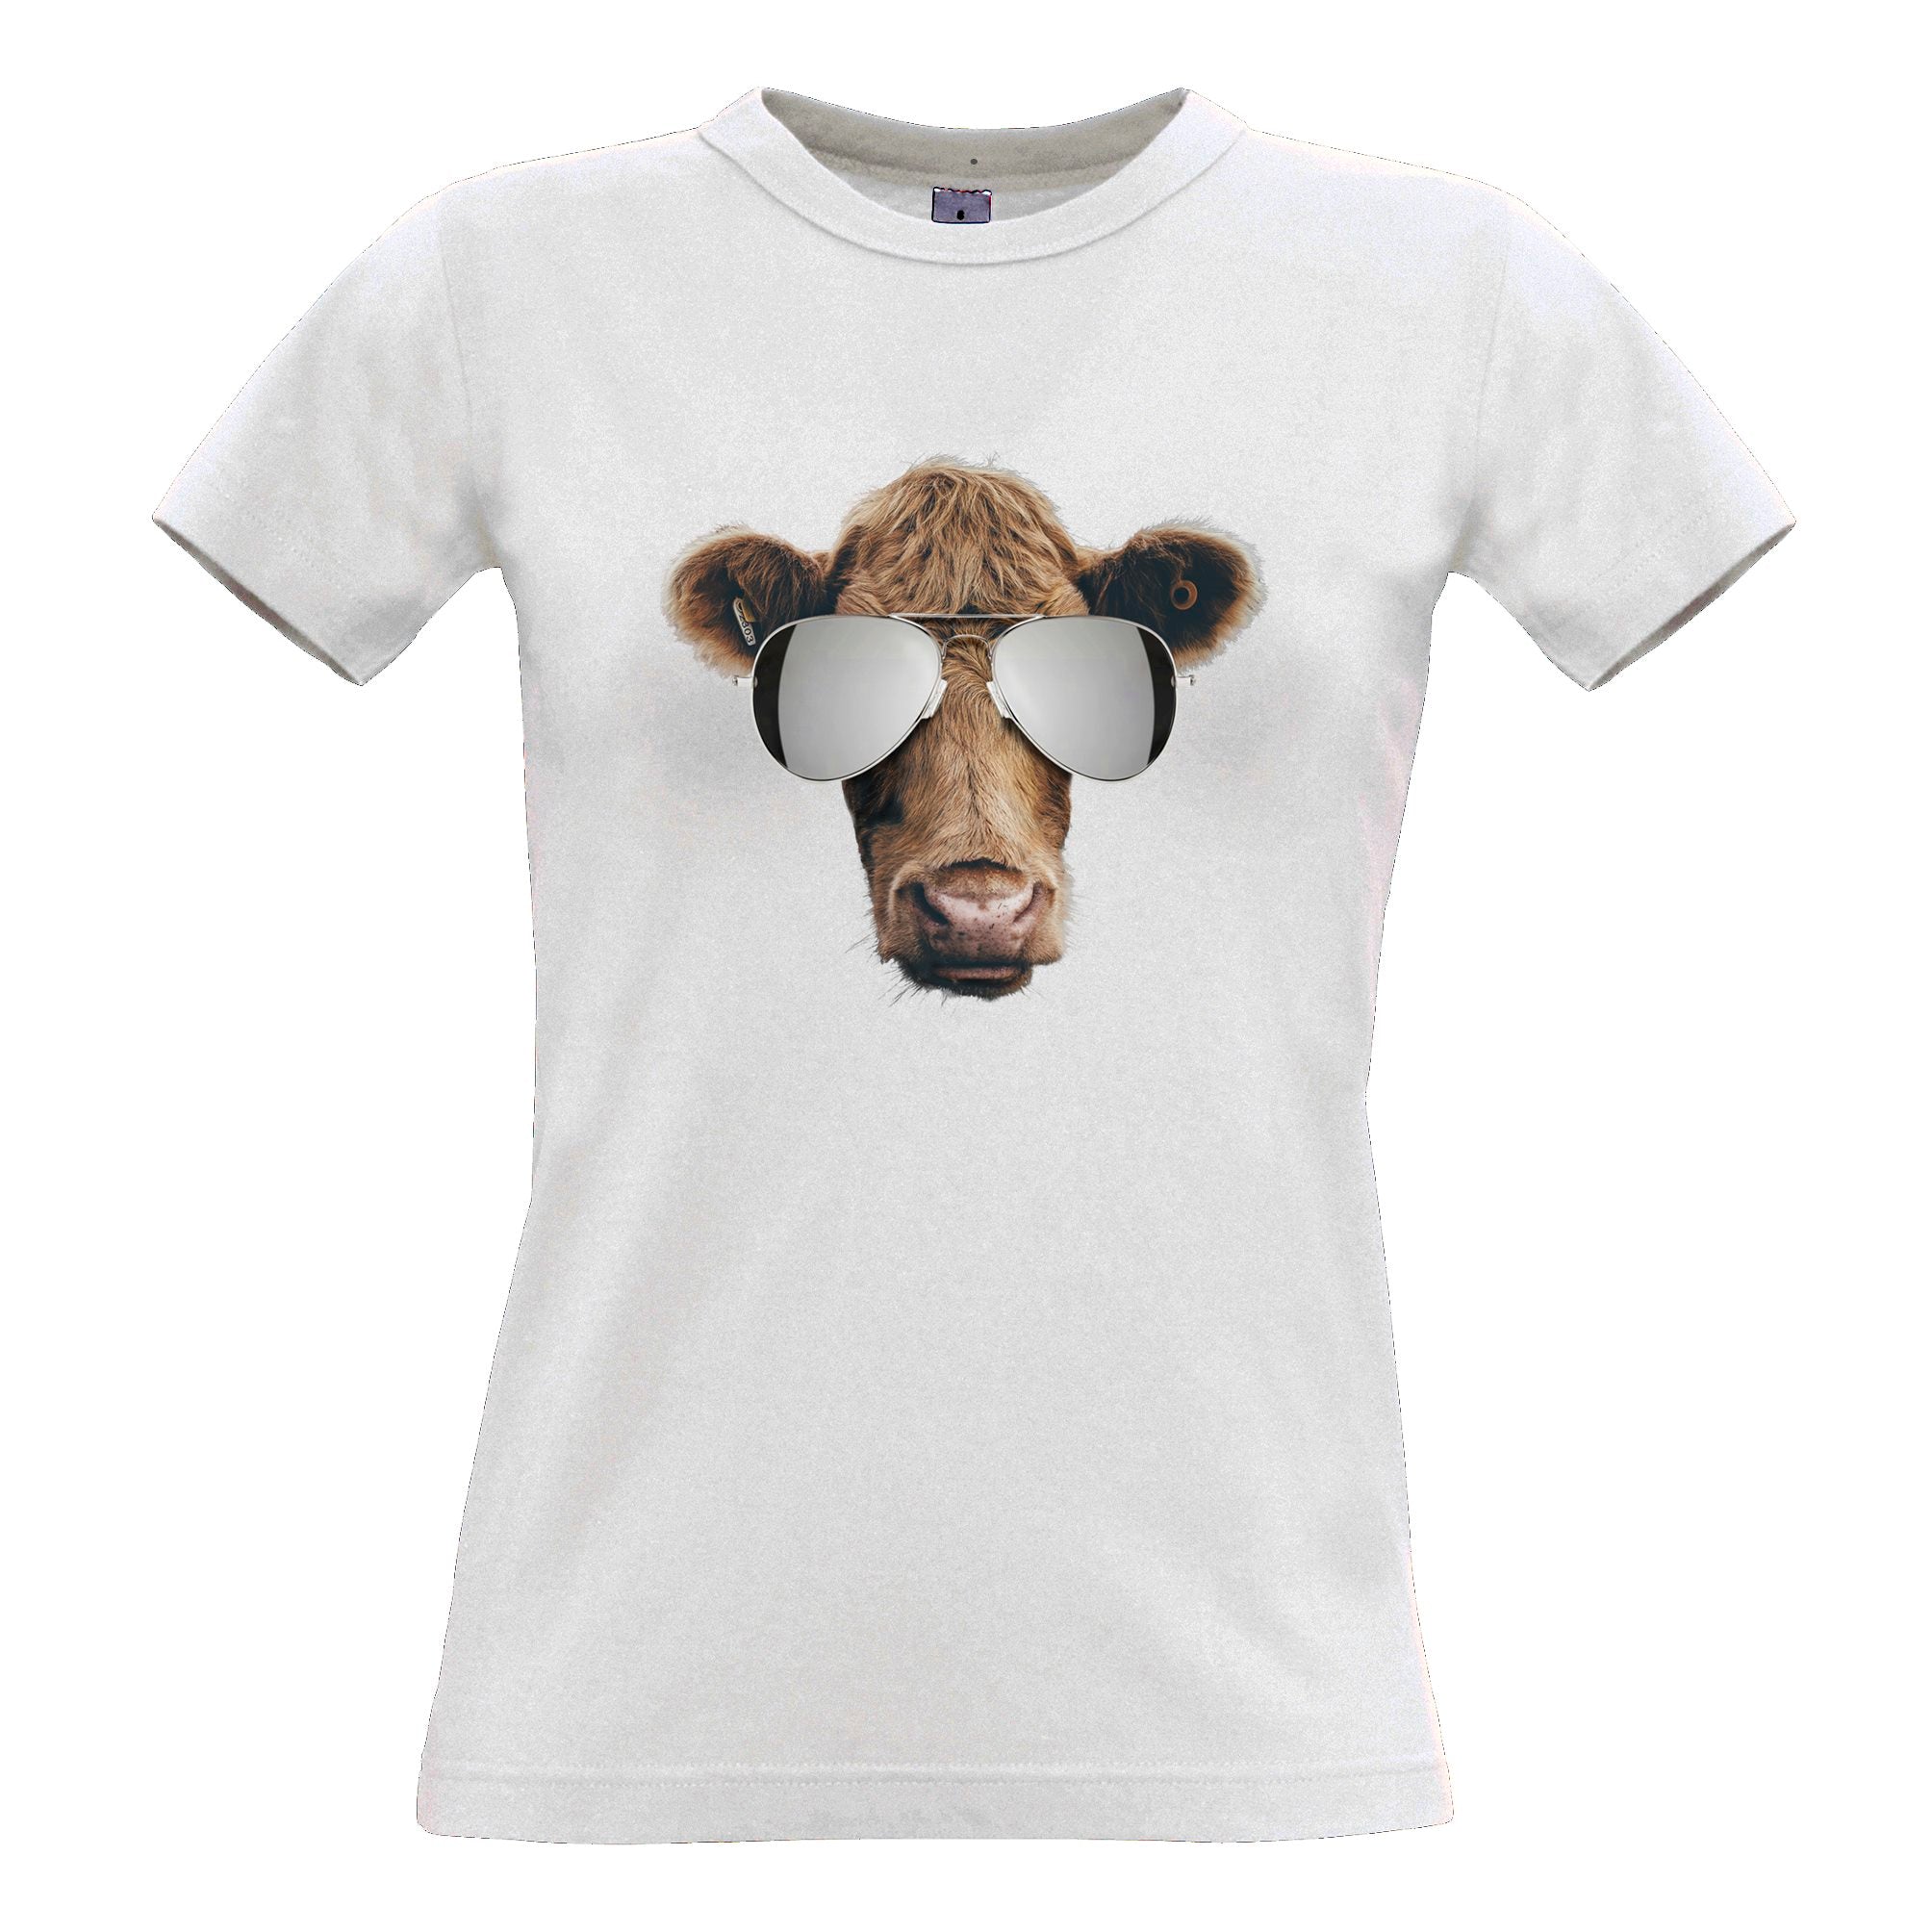 Summer Art Womens T Shirt Cow Wearing Sunglasses